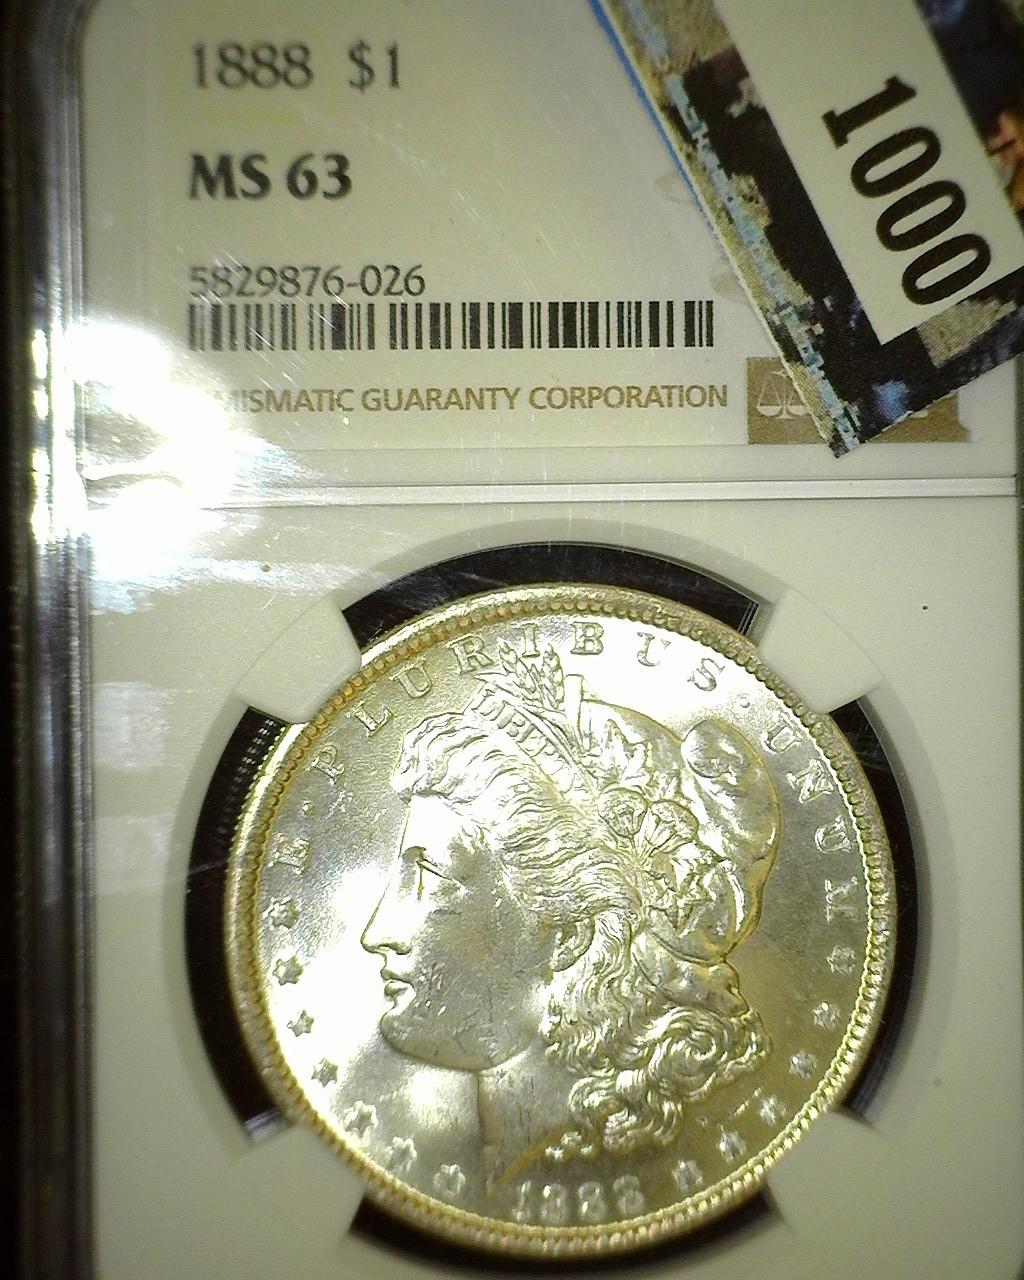 1888 P NGC slabbed MS 63 Morgan Silver Dollar.